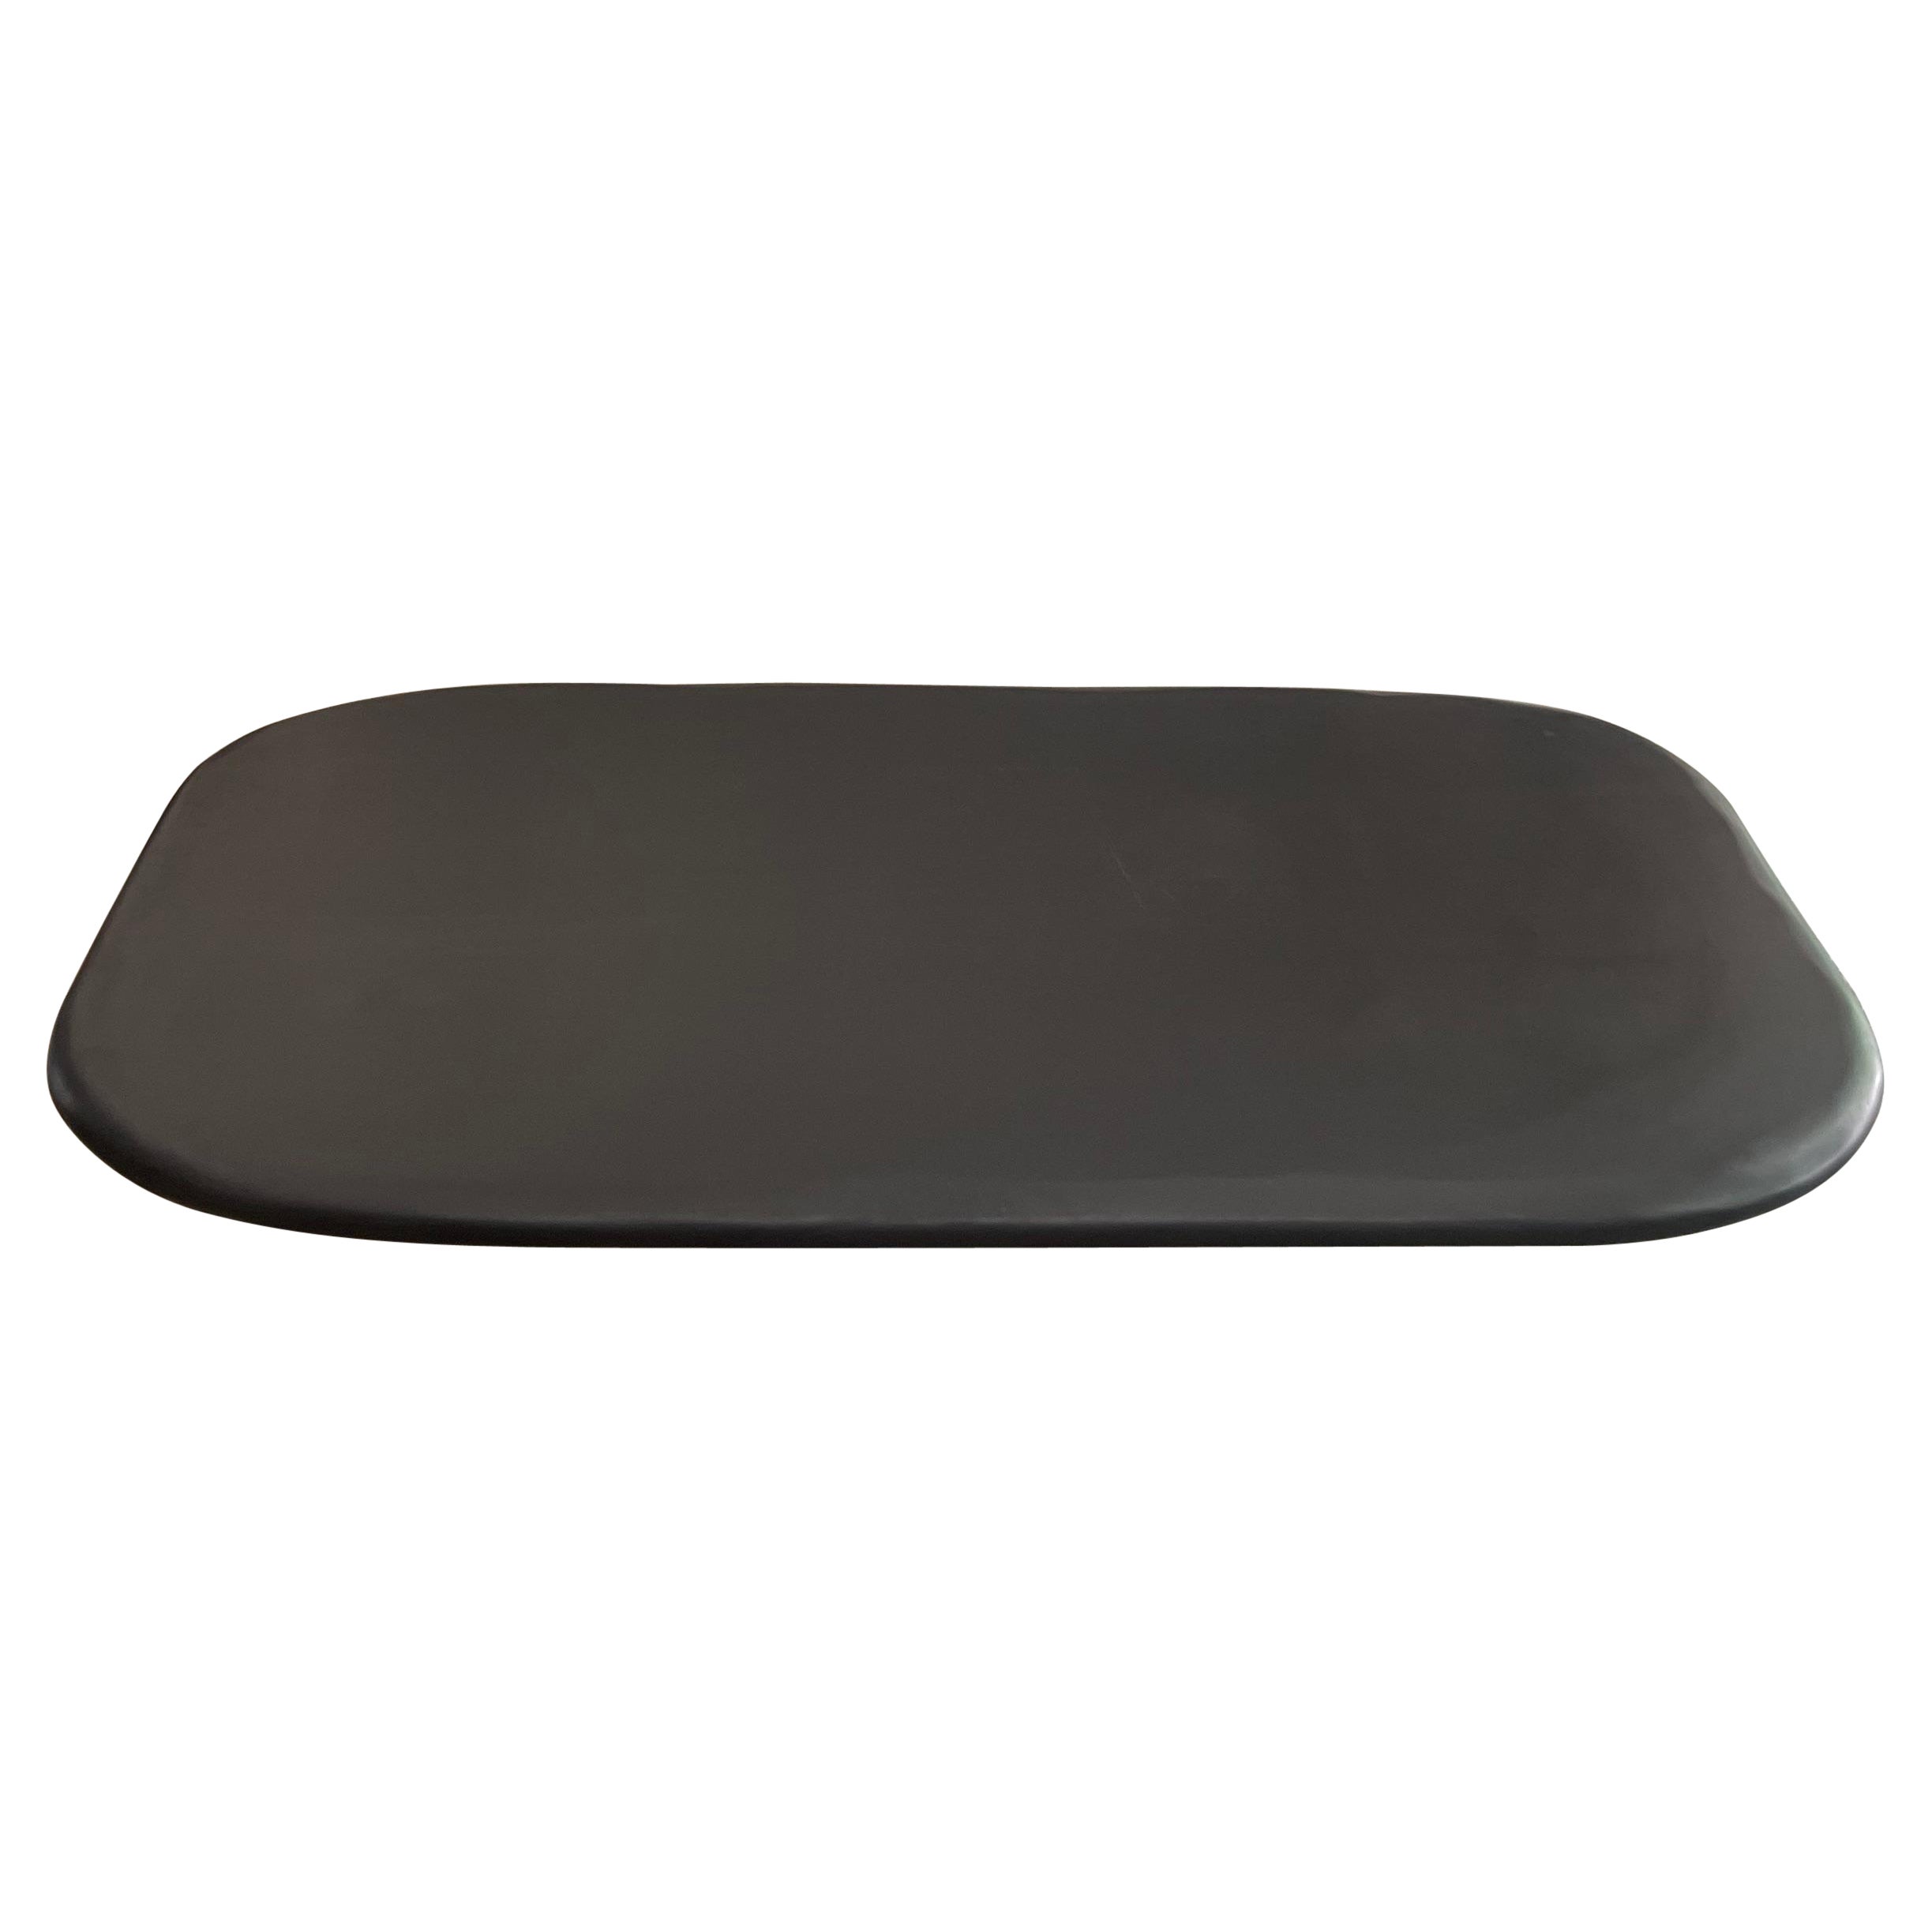 Table à galets, table en pierre noire mate avec bord arrondi et base en vente